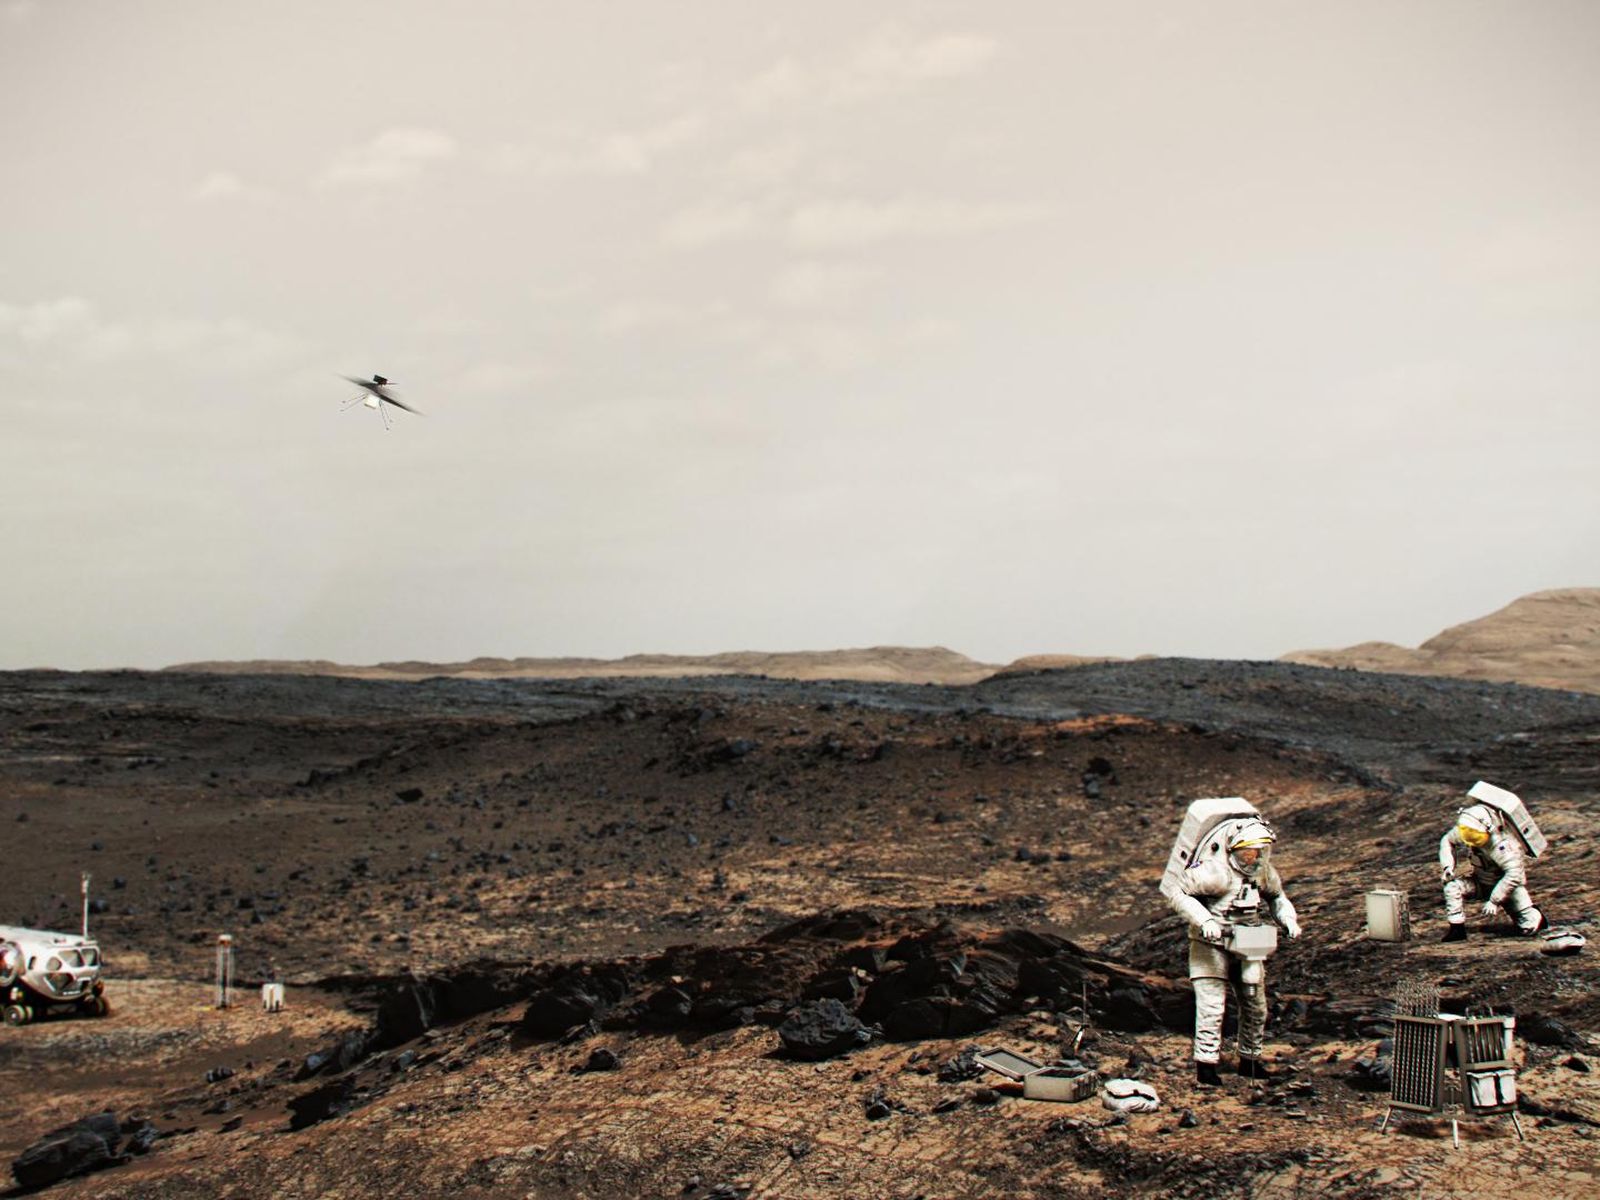 Астронавтите, работещи на Марс, биха могли да използват хеликоптер (видян над тях като работещ на Марс), подобен на хеликоптера Mars Innovation.